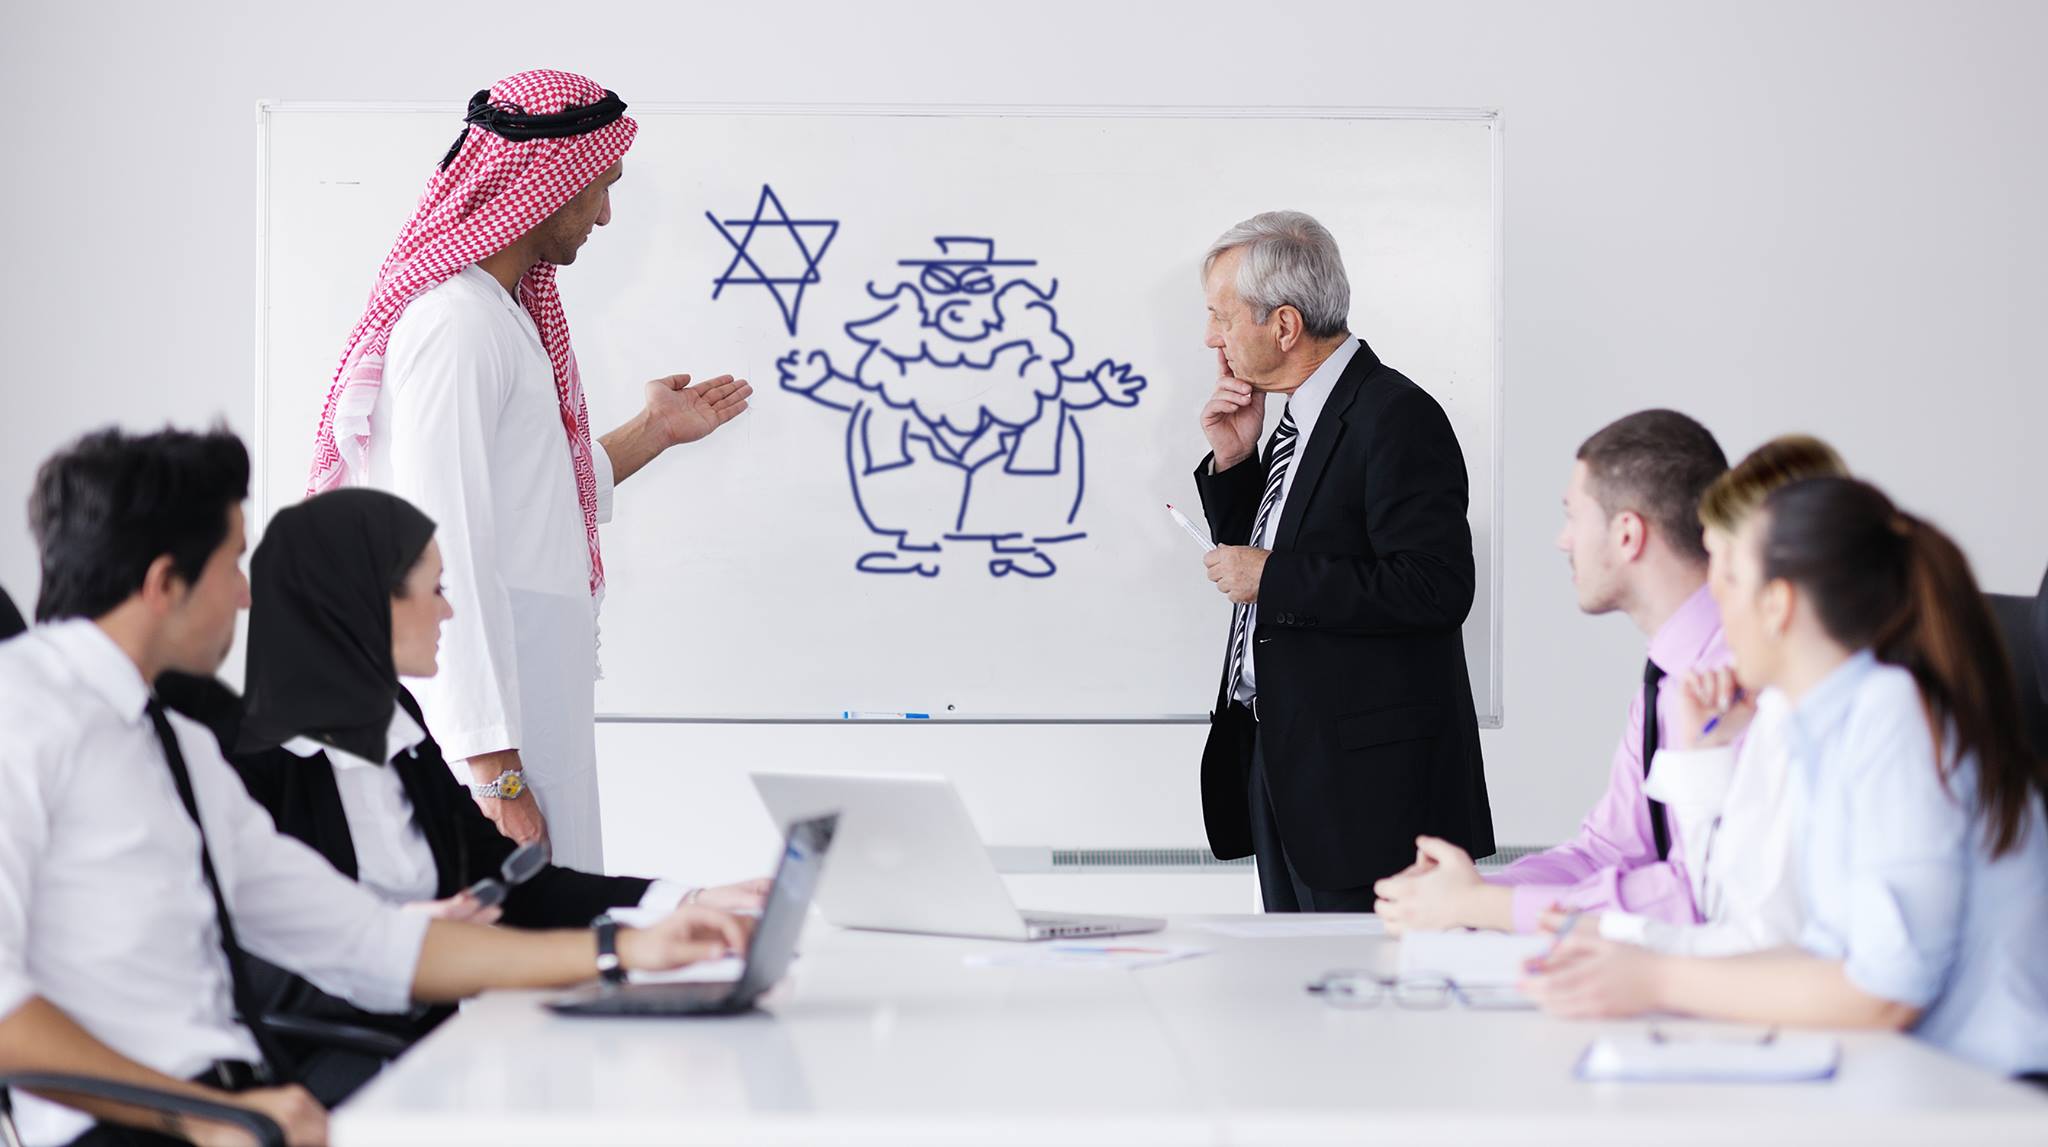 صورة دليل الحدود: كيف تلوم اليهود على كل تياسات العرب